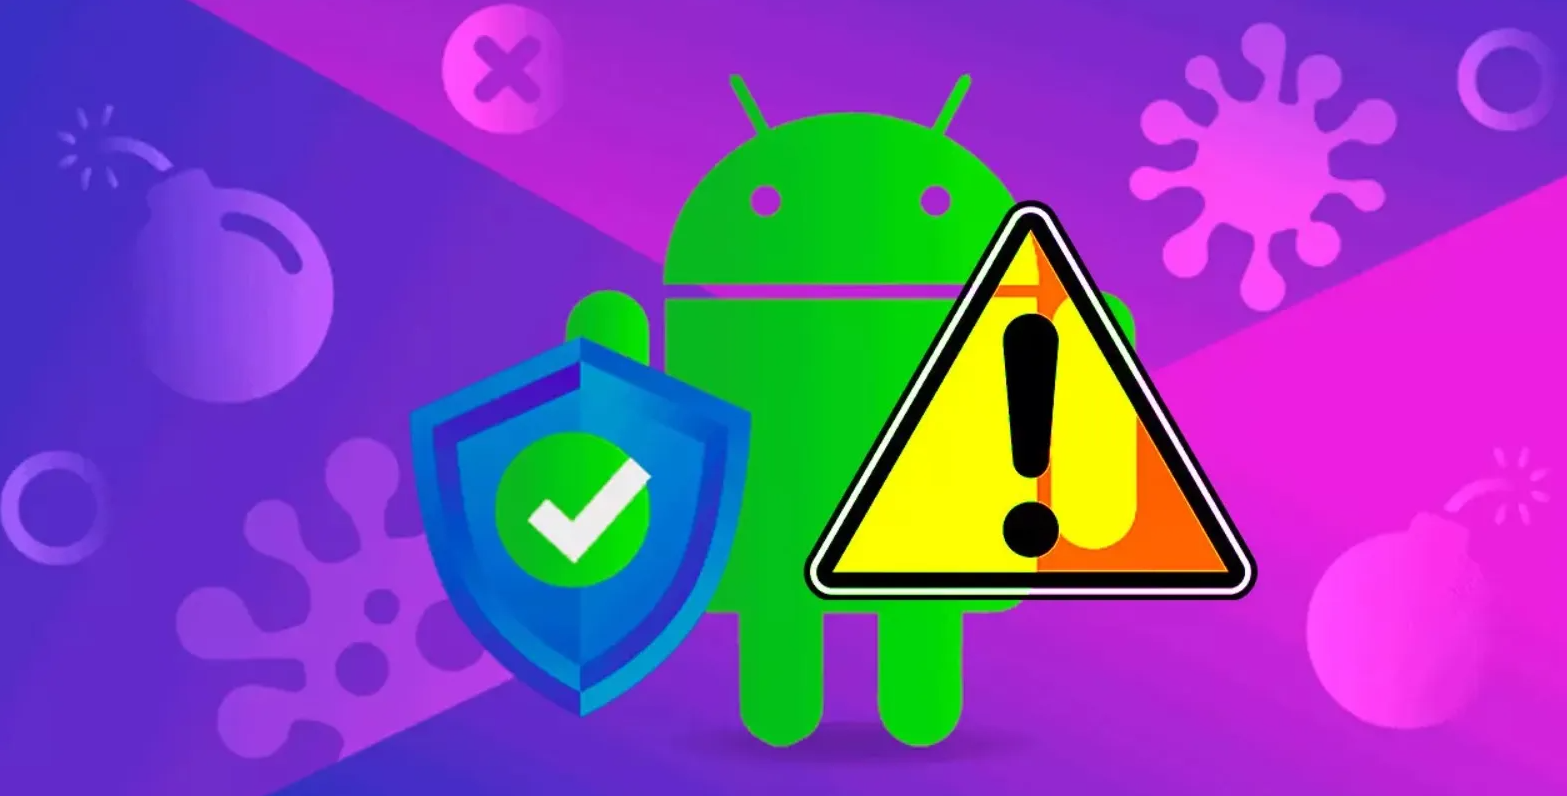 Google Play: Malware infecta 60 aplicativos com mais de 100 milhões de downloads - Hardware.com.br